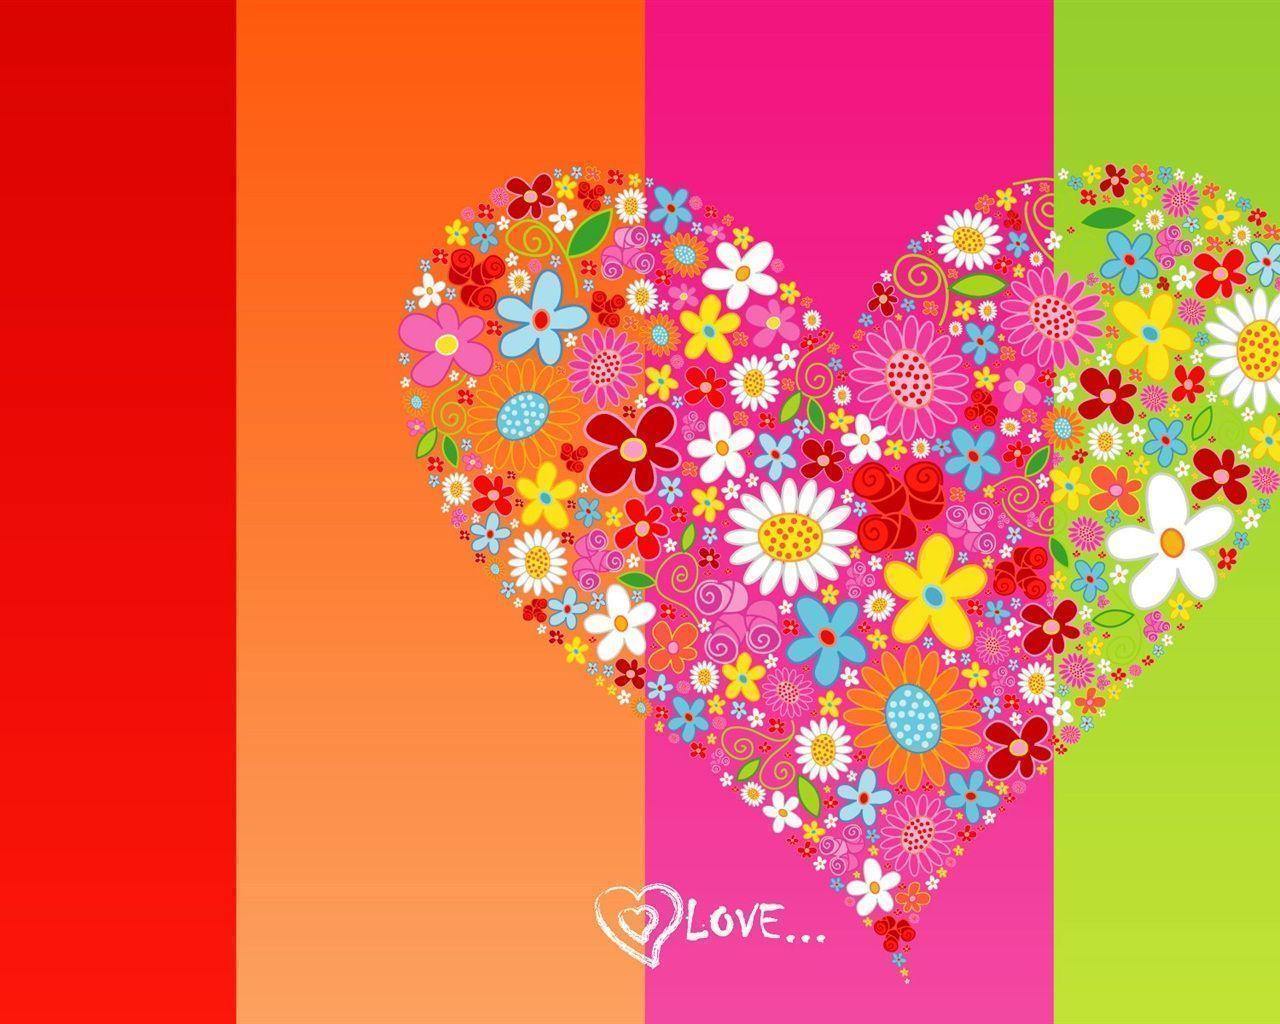 Wallpaper For > Love Heart Wallpaper Background